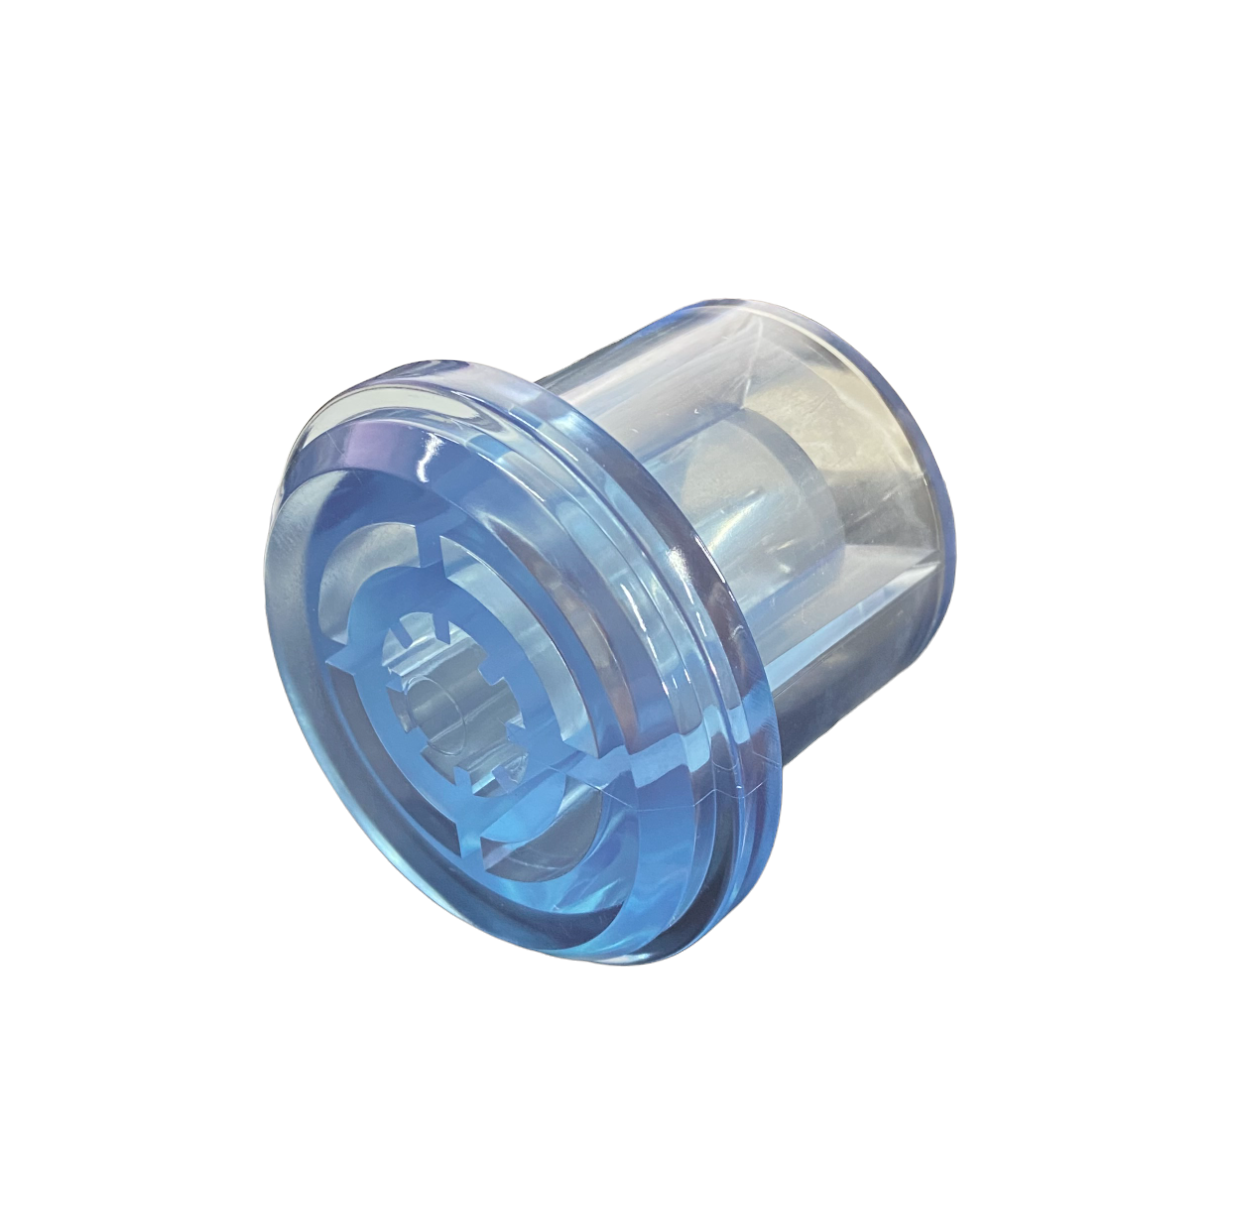 Lifegard Aquatics Pro-MAX UV Clear End Cap 3" & 5" Models Part # R450209